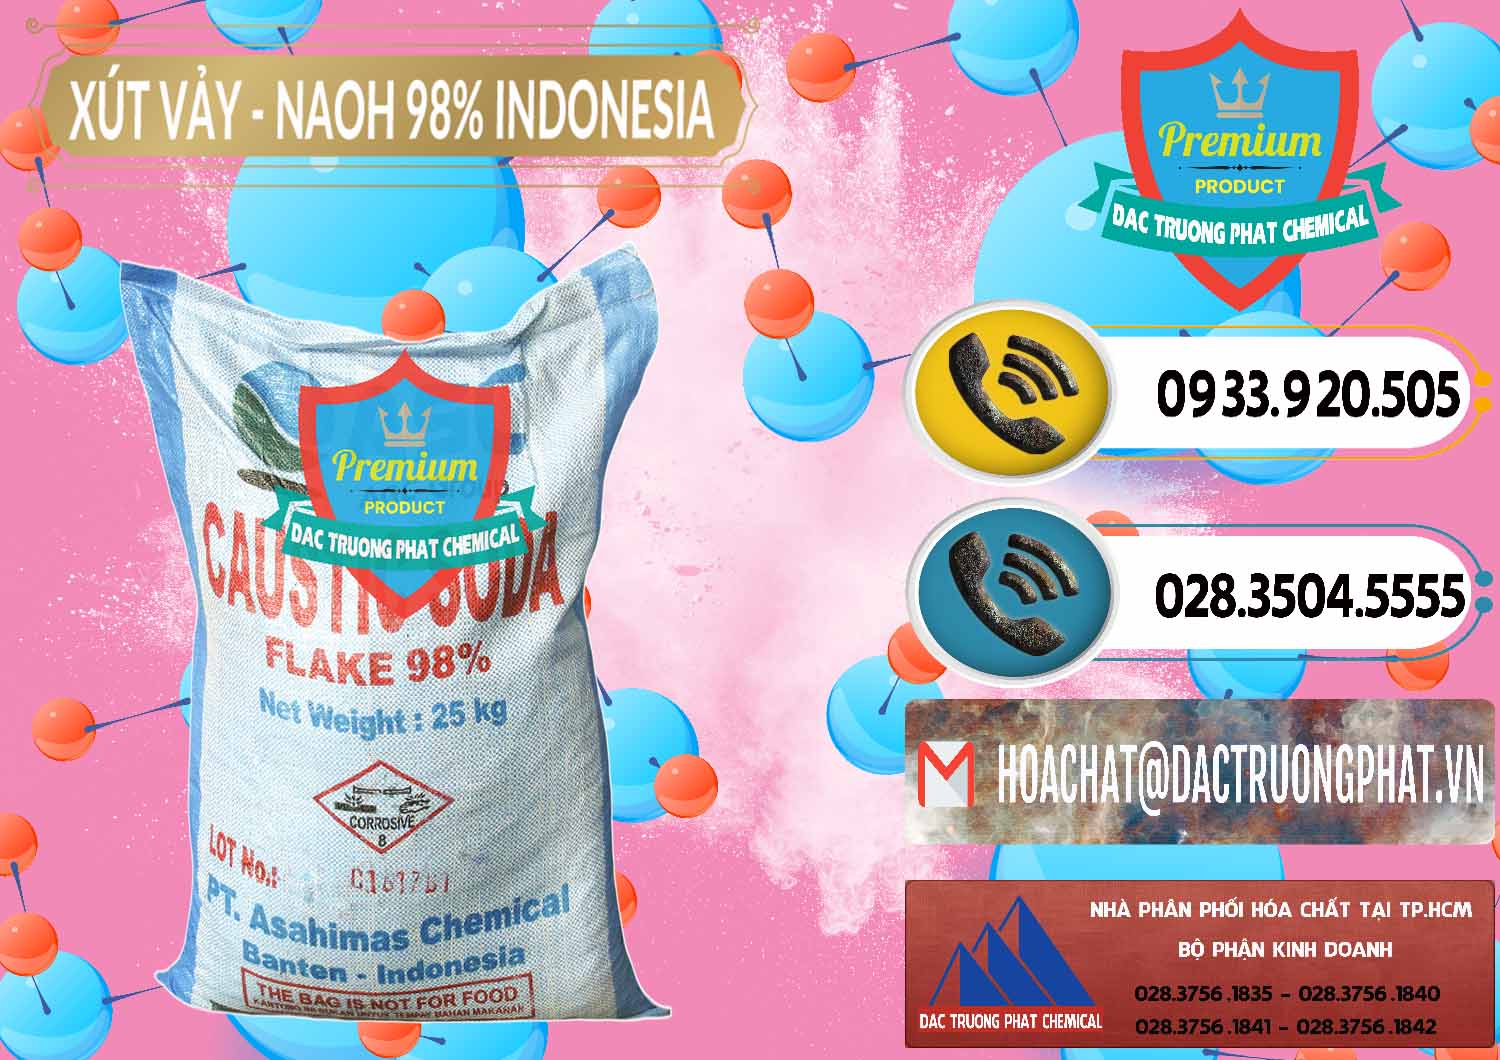 Cty chuyên kinh doanh _ bán Xút Vảy - NaOH Vảy 98% ASC Indonesia - 0172 - Công ty chuyên bán - phân phối hóa chất tại TP.HCM - hoachatdetnhuom.vn